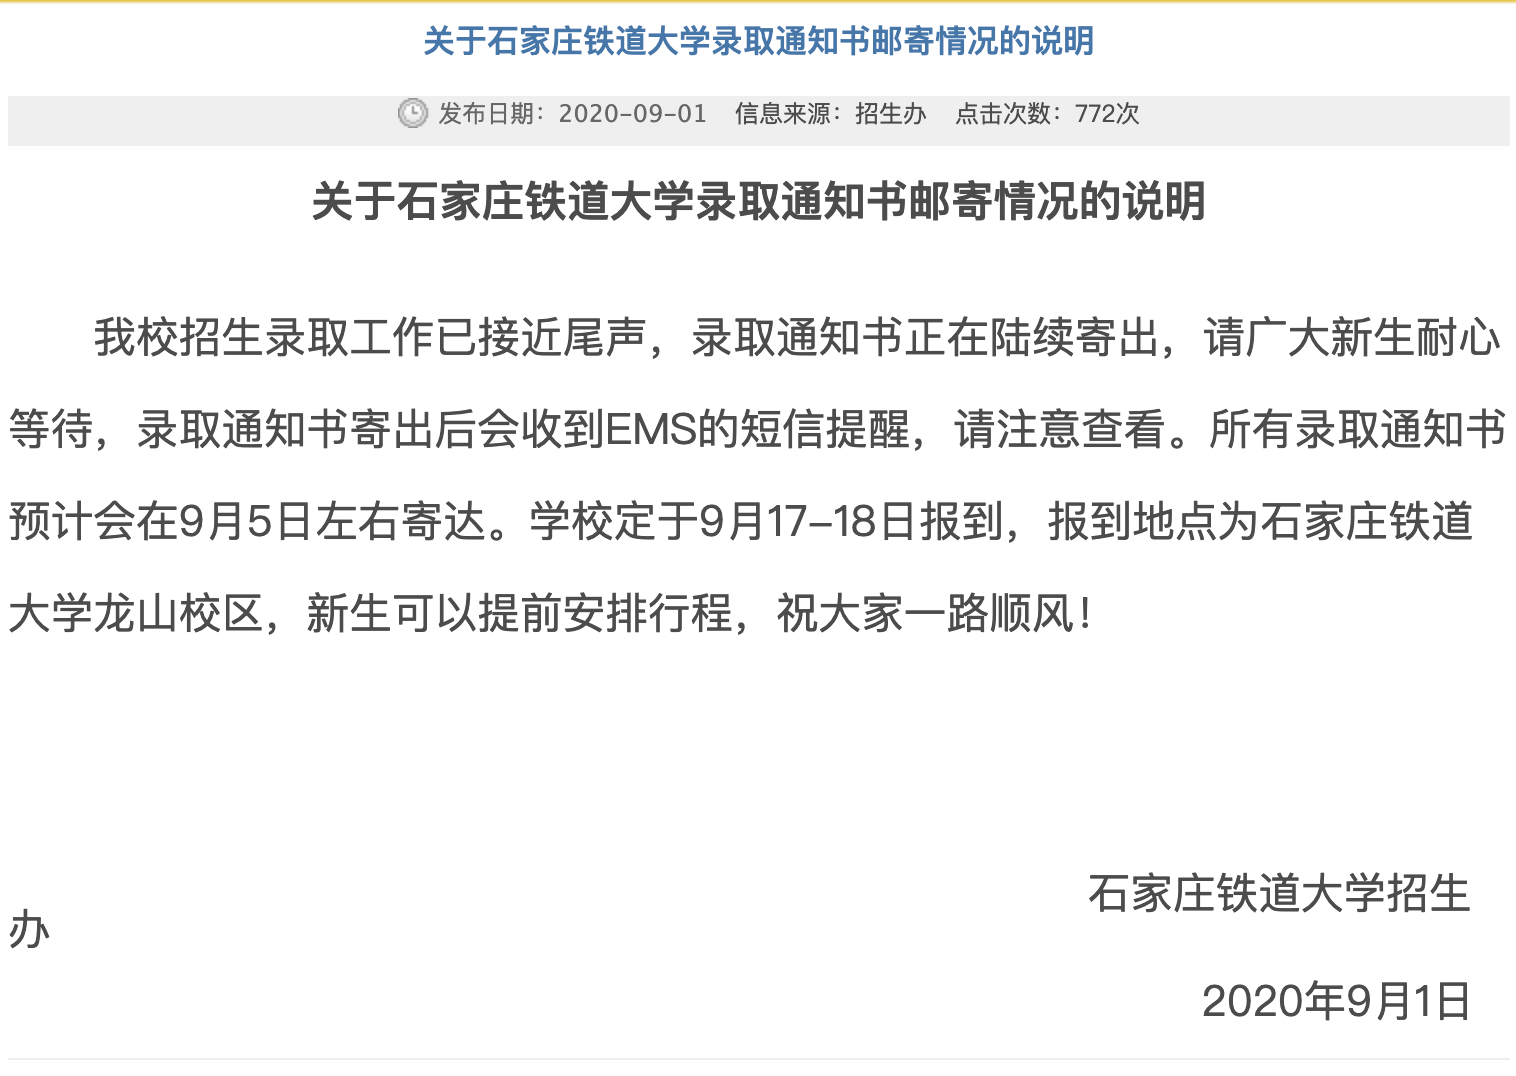 石家庄铁道大学2020高考录取通知书邮寄情况的说明